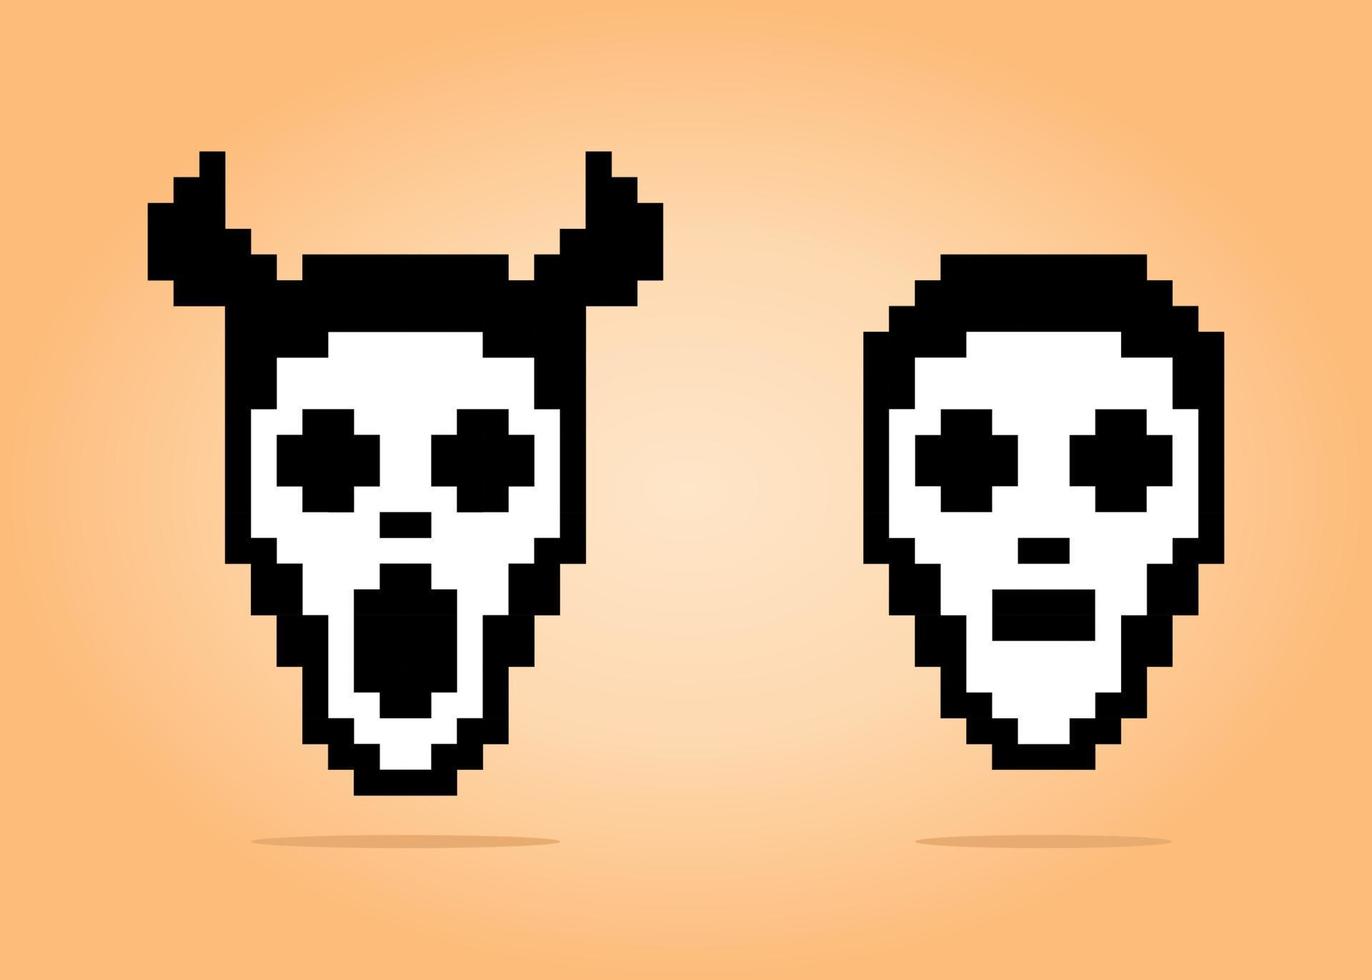 Píxeles de 8 bits de máscara facial aterradora. disfraces de halloween para juegos de activos y patrones de punto de cruz en ilustraciones vectoriales. vector